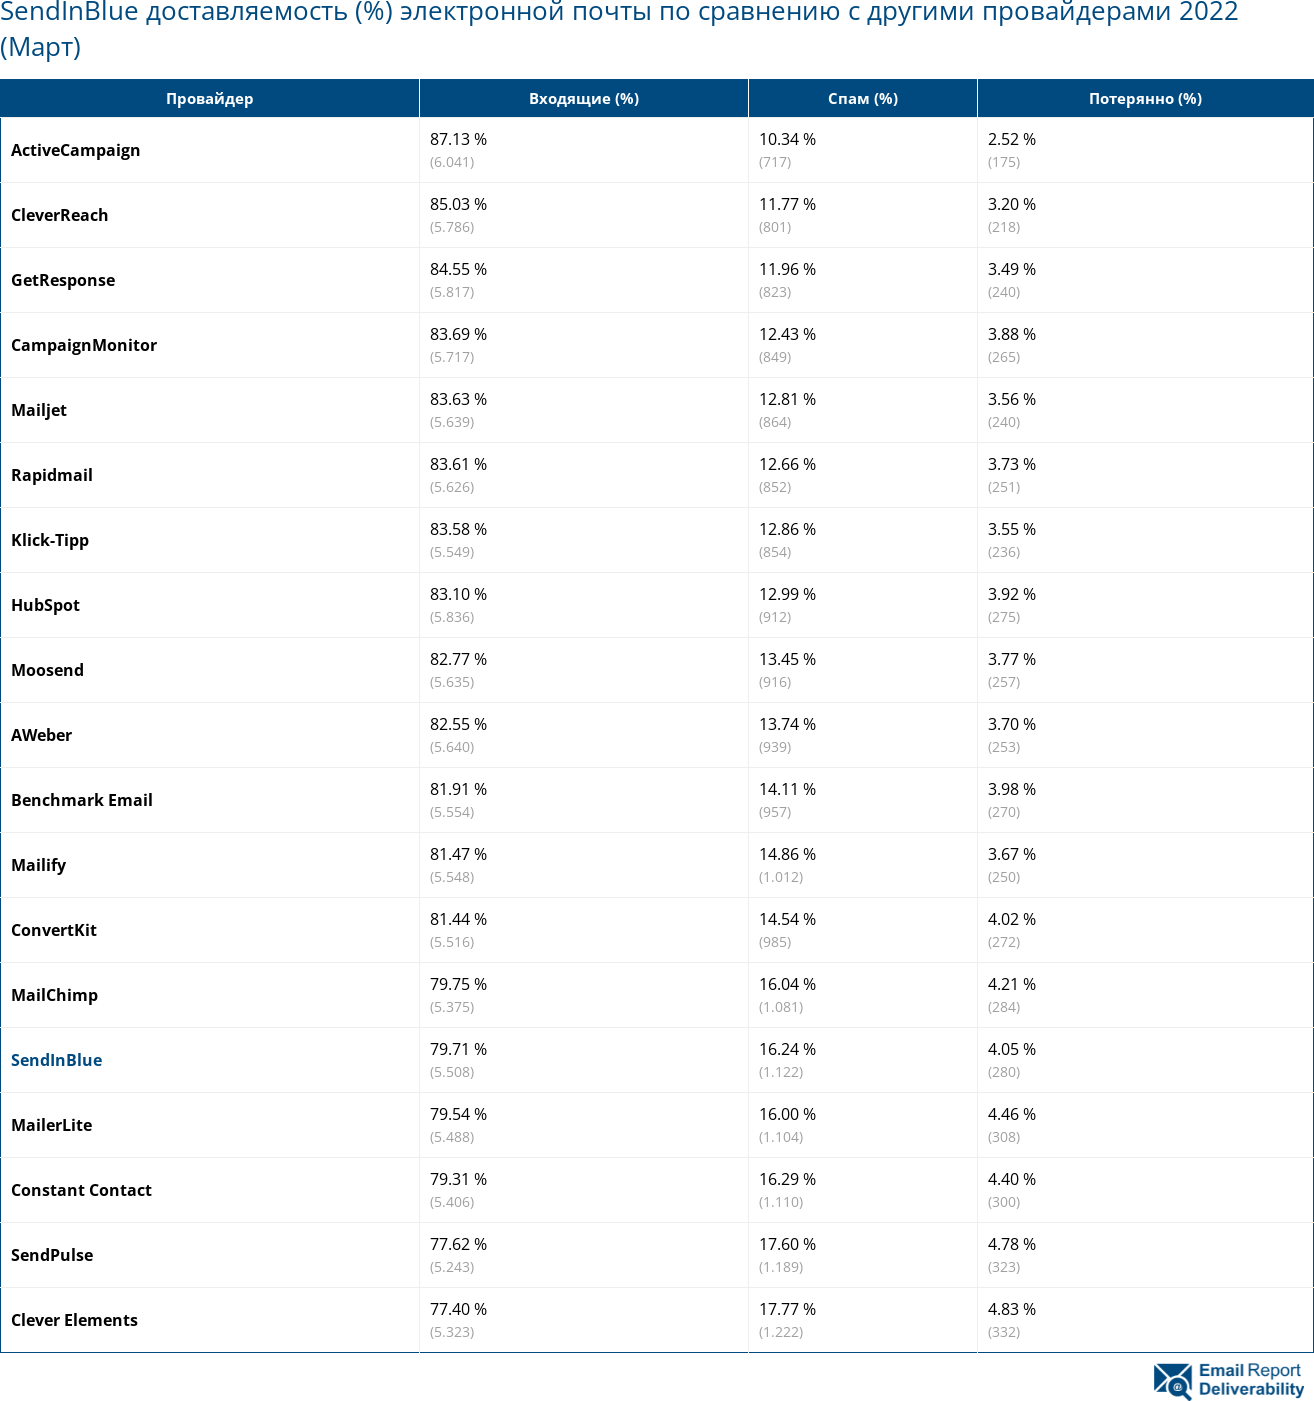 SendInBlue доставляемость (%) электронной почты по сравнению с другими провайдерами 2022 (Март)